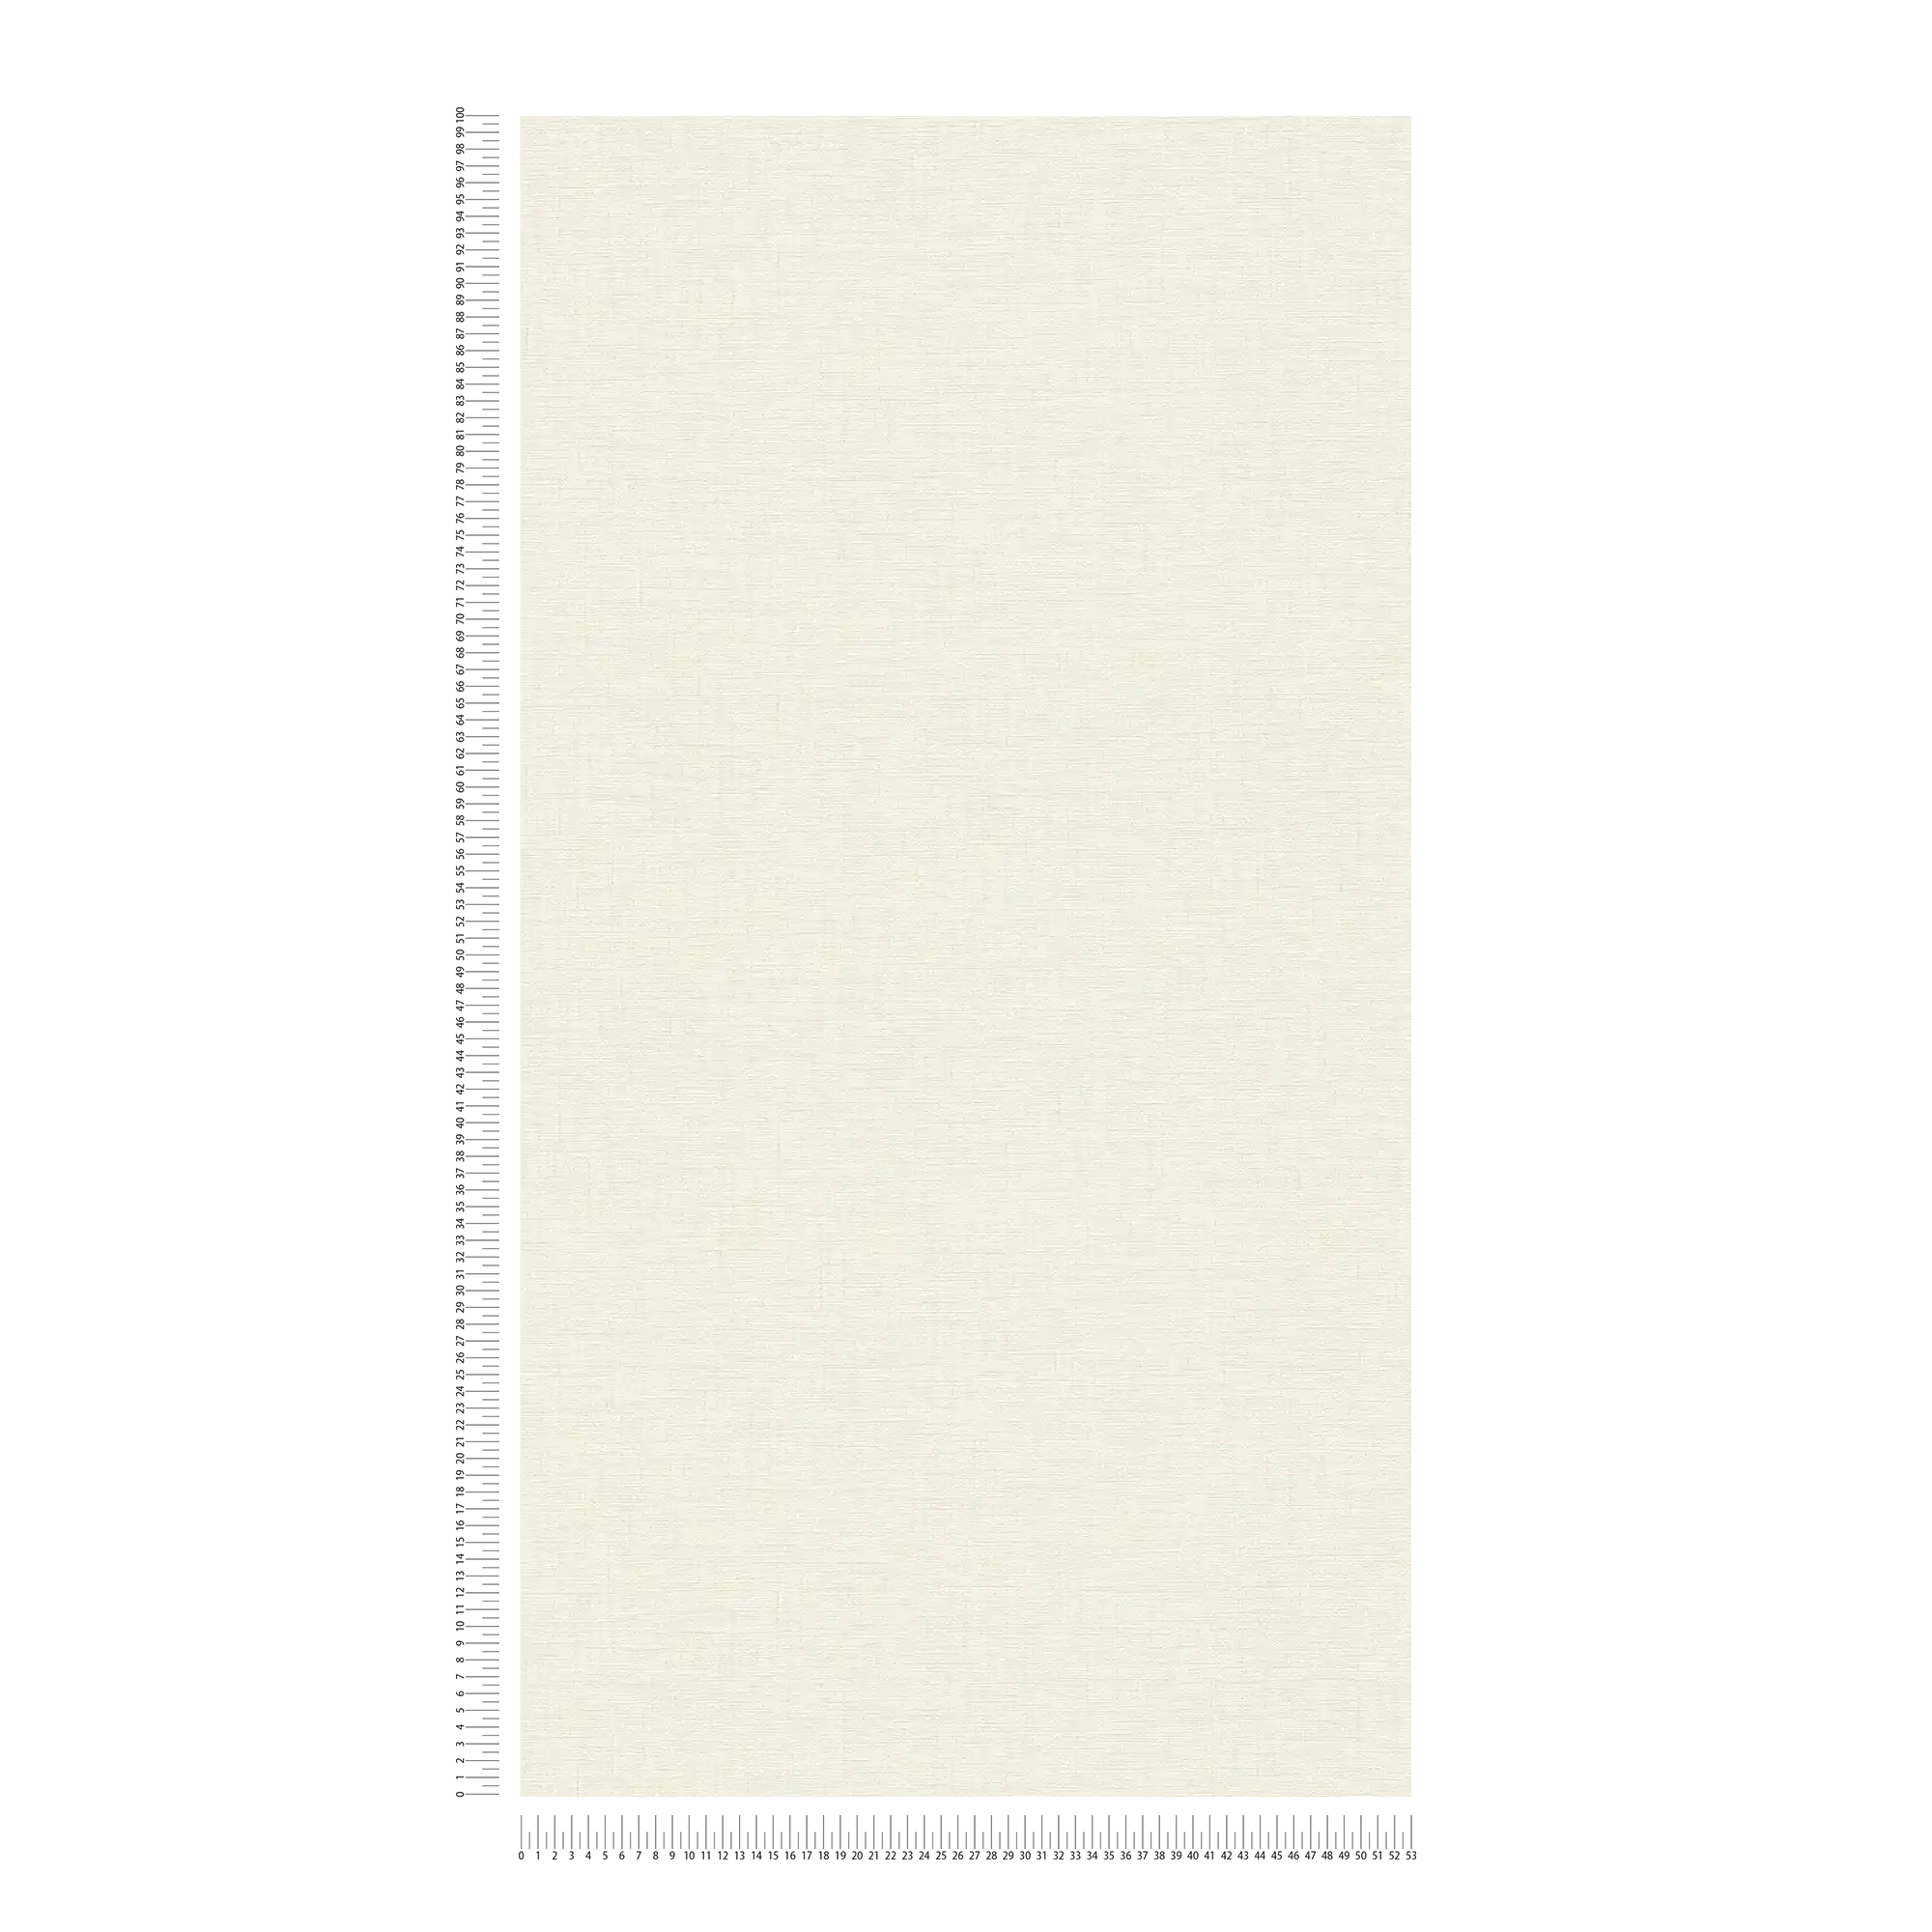             Papier peint blanc-crème avec aspect textile & effet texturé
        